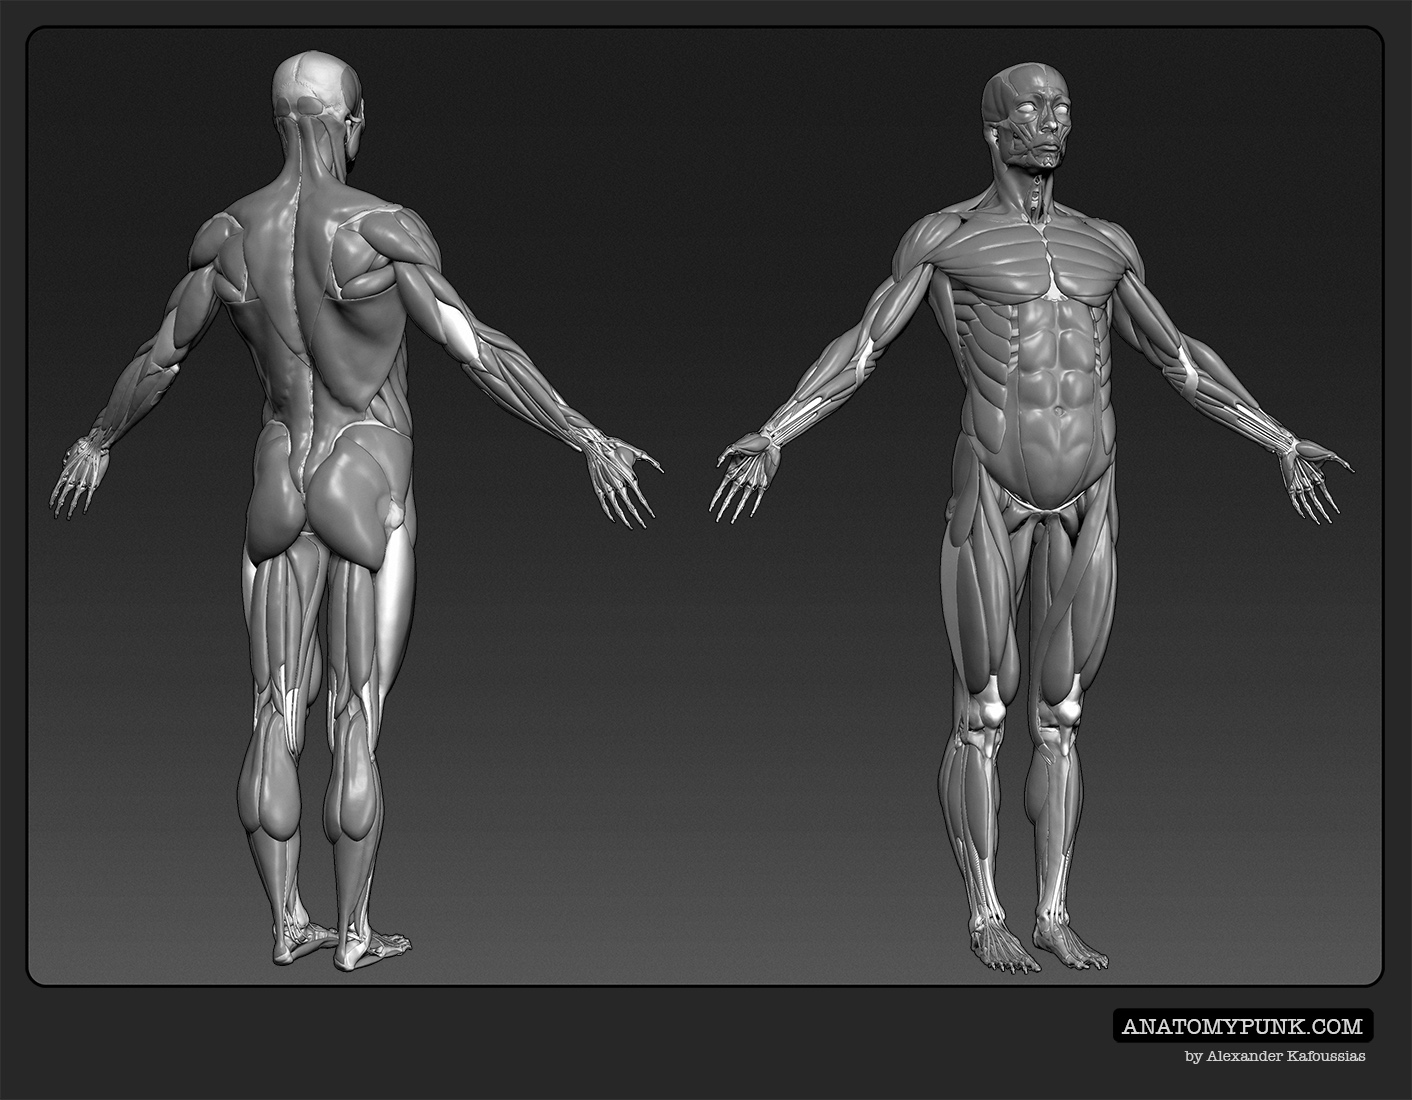 Muscles5_anatomypunk.jpeg